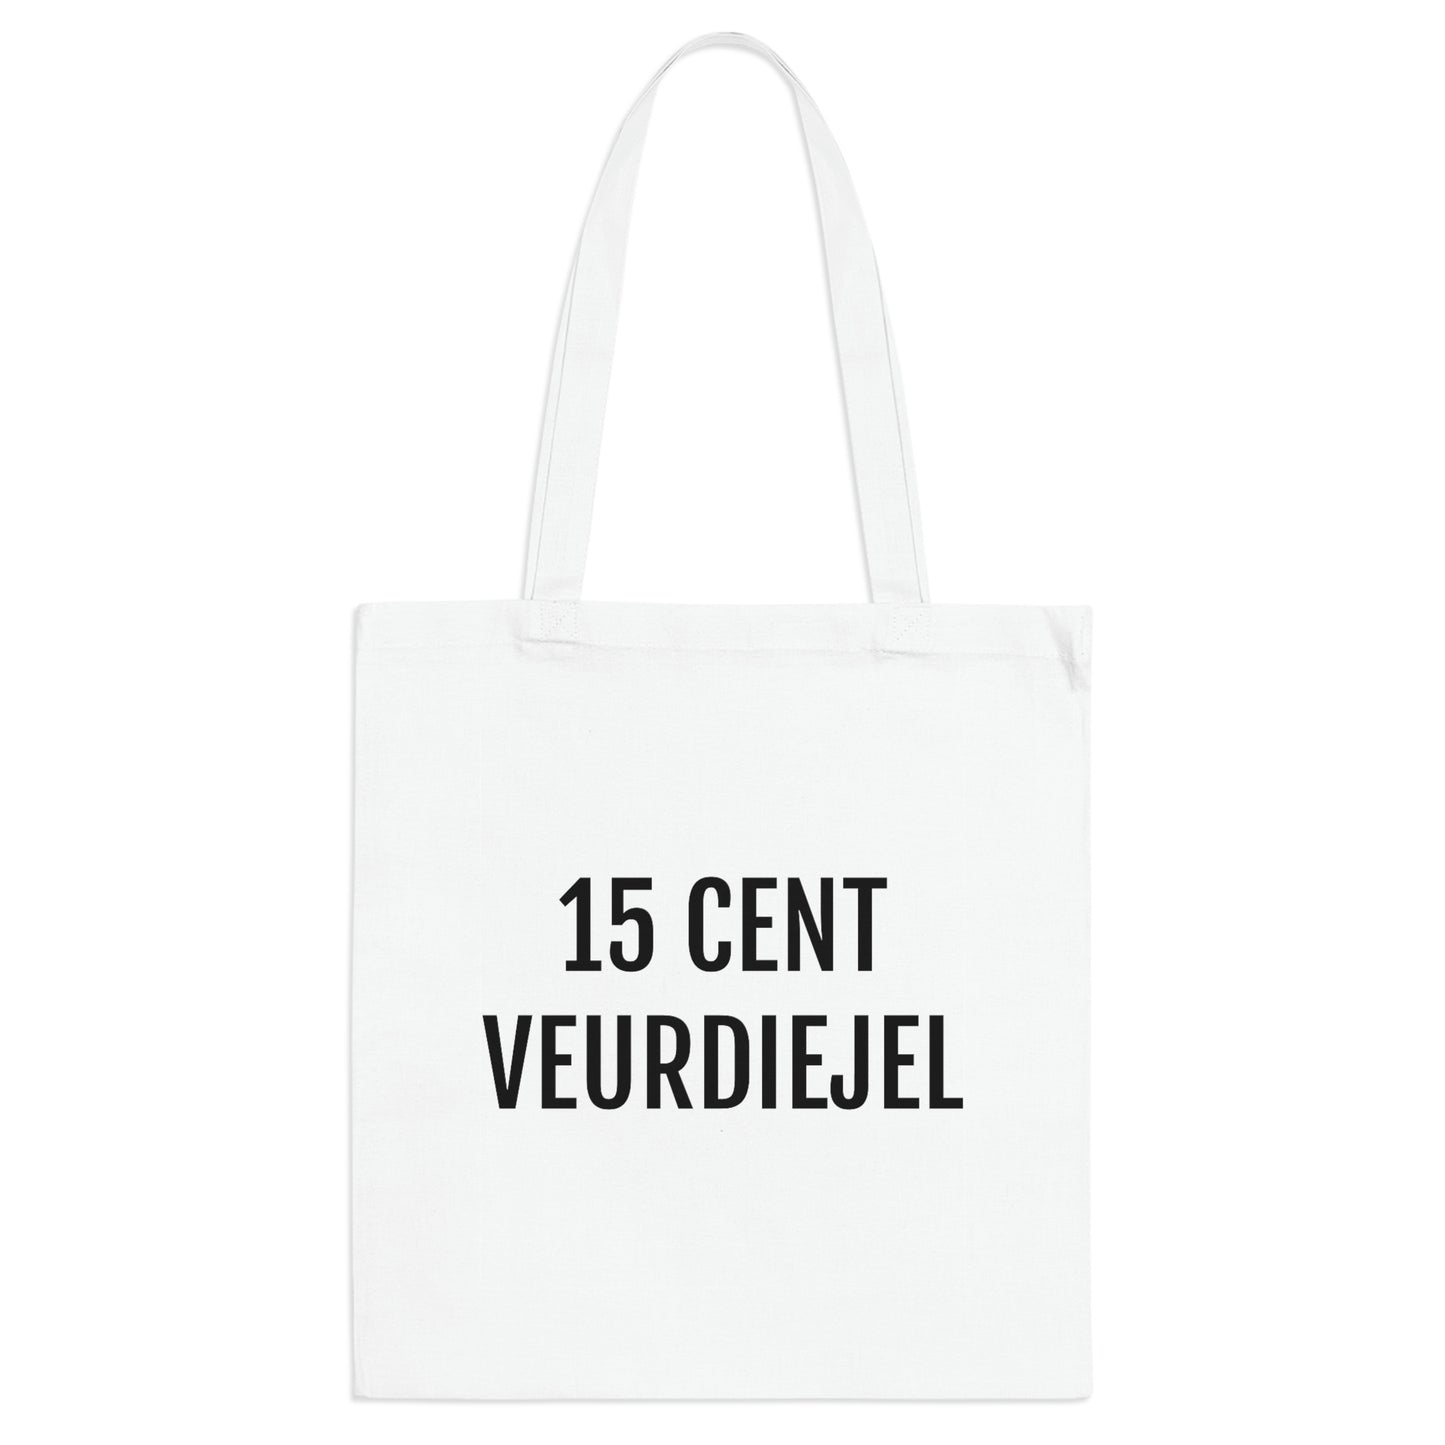 15 Cent veurdiejel - Druk je unieke stijl uit met onze dialect-thema | Leuke tote bags kopen als cadeau of voor jezelf.